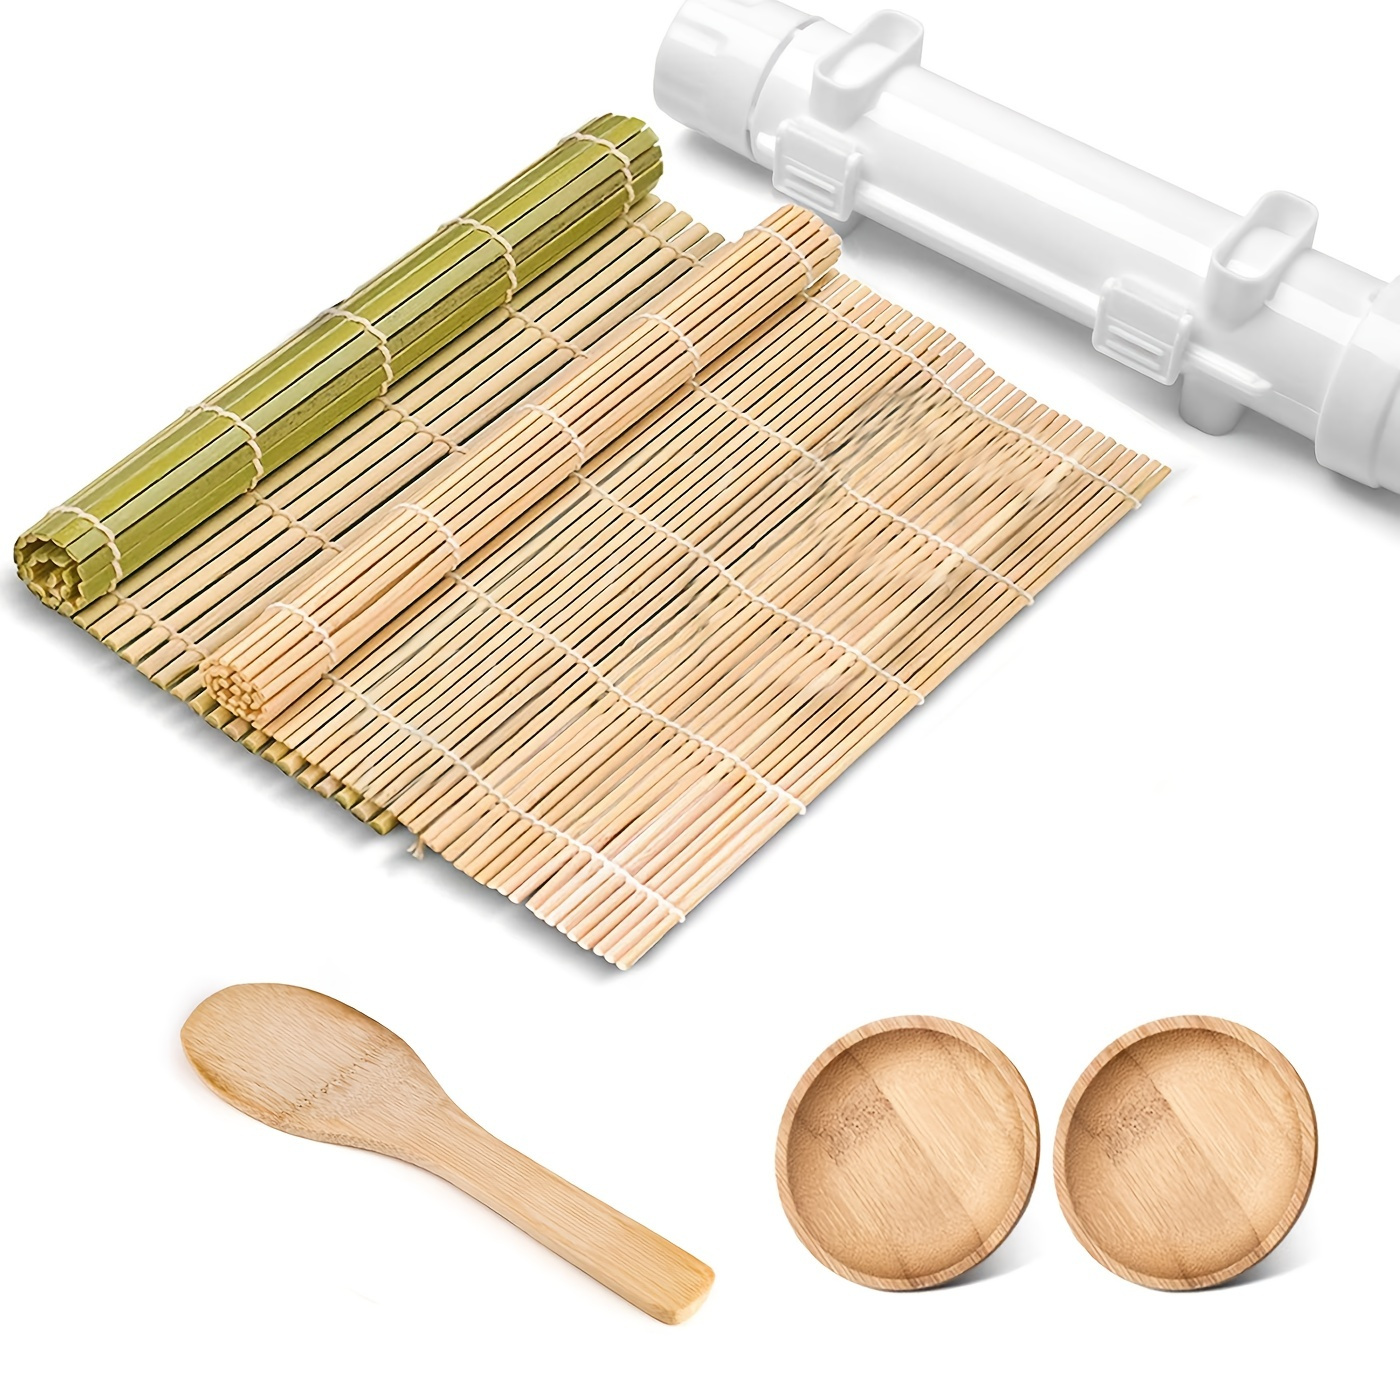 Bamboo Sushi-Making-Kit for Beginners,23PCS Sushi-Kit, Bazooka Sushi Roller  with Sushi Mat, Sushi Knife, Tweezers, Chopsticks and Holder, Mold